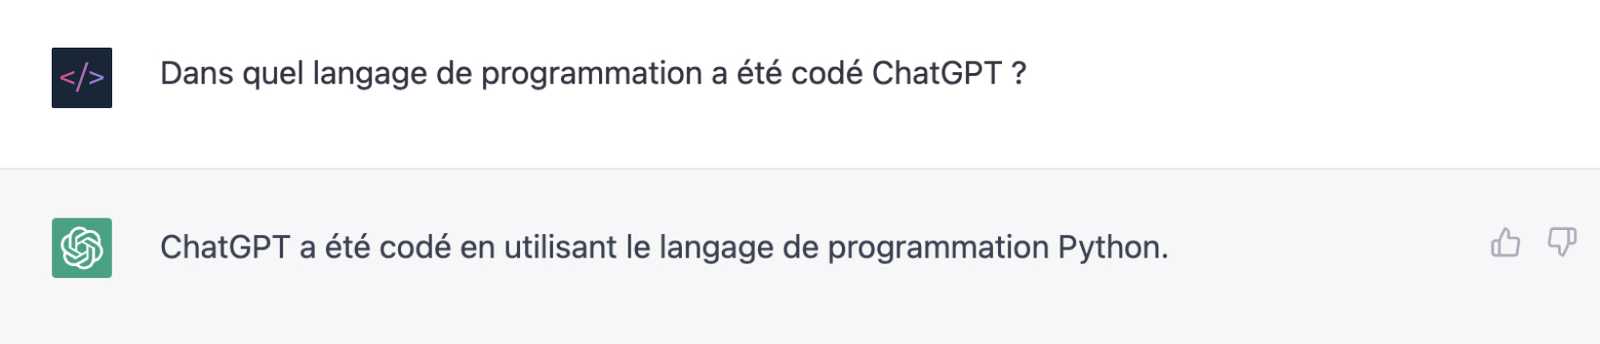 Dans quel langage de programmation a été codé ChatGPT ?